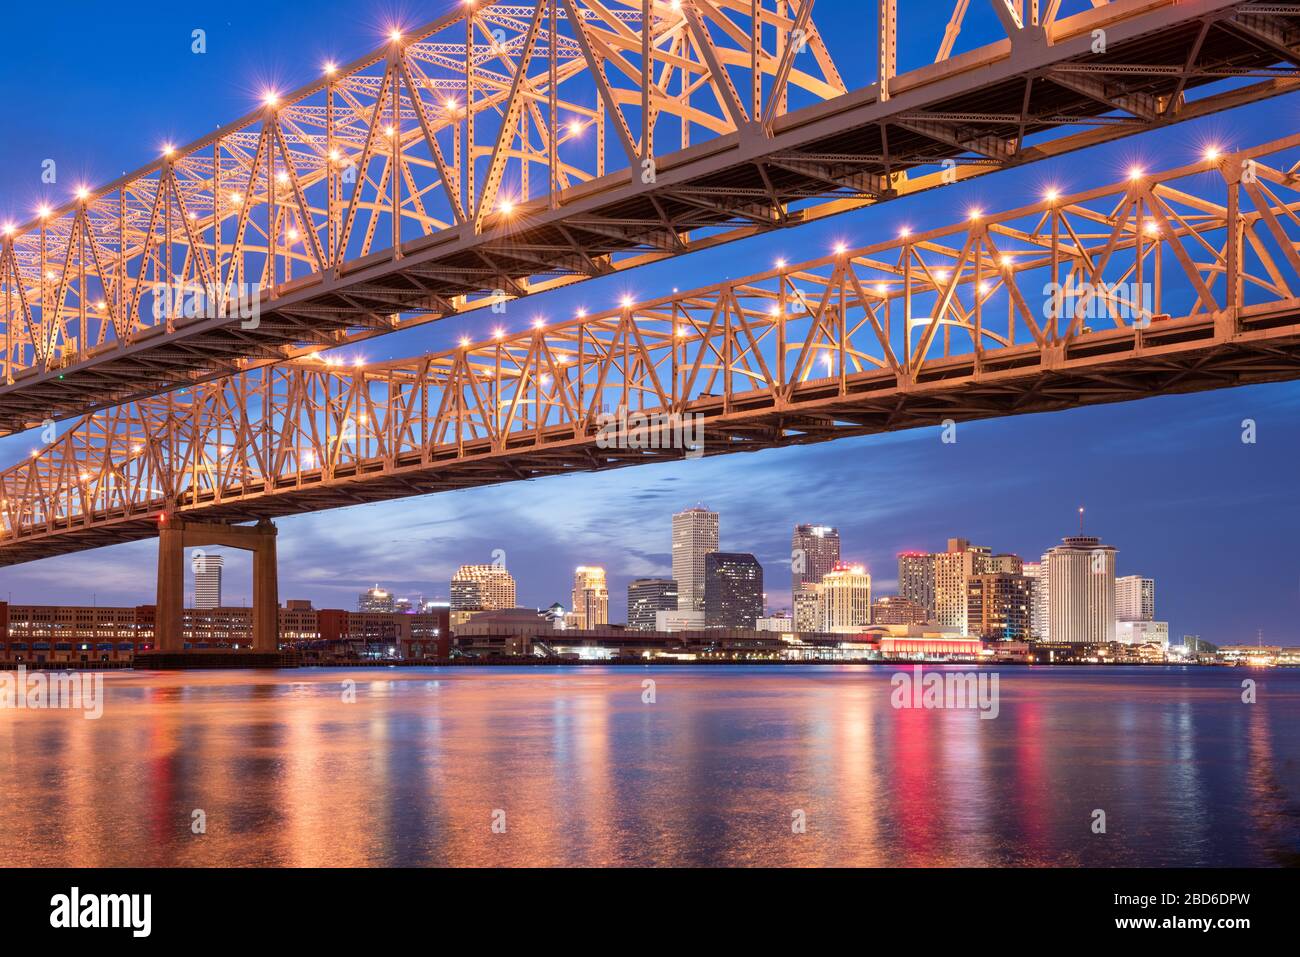 La Nouvelle-Orléans, Louisiane, États-Unis au pont Crescent City Connection Bridge au-dessus du fleuve Mississippi la nuit. Banque D'Images